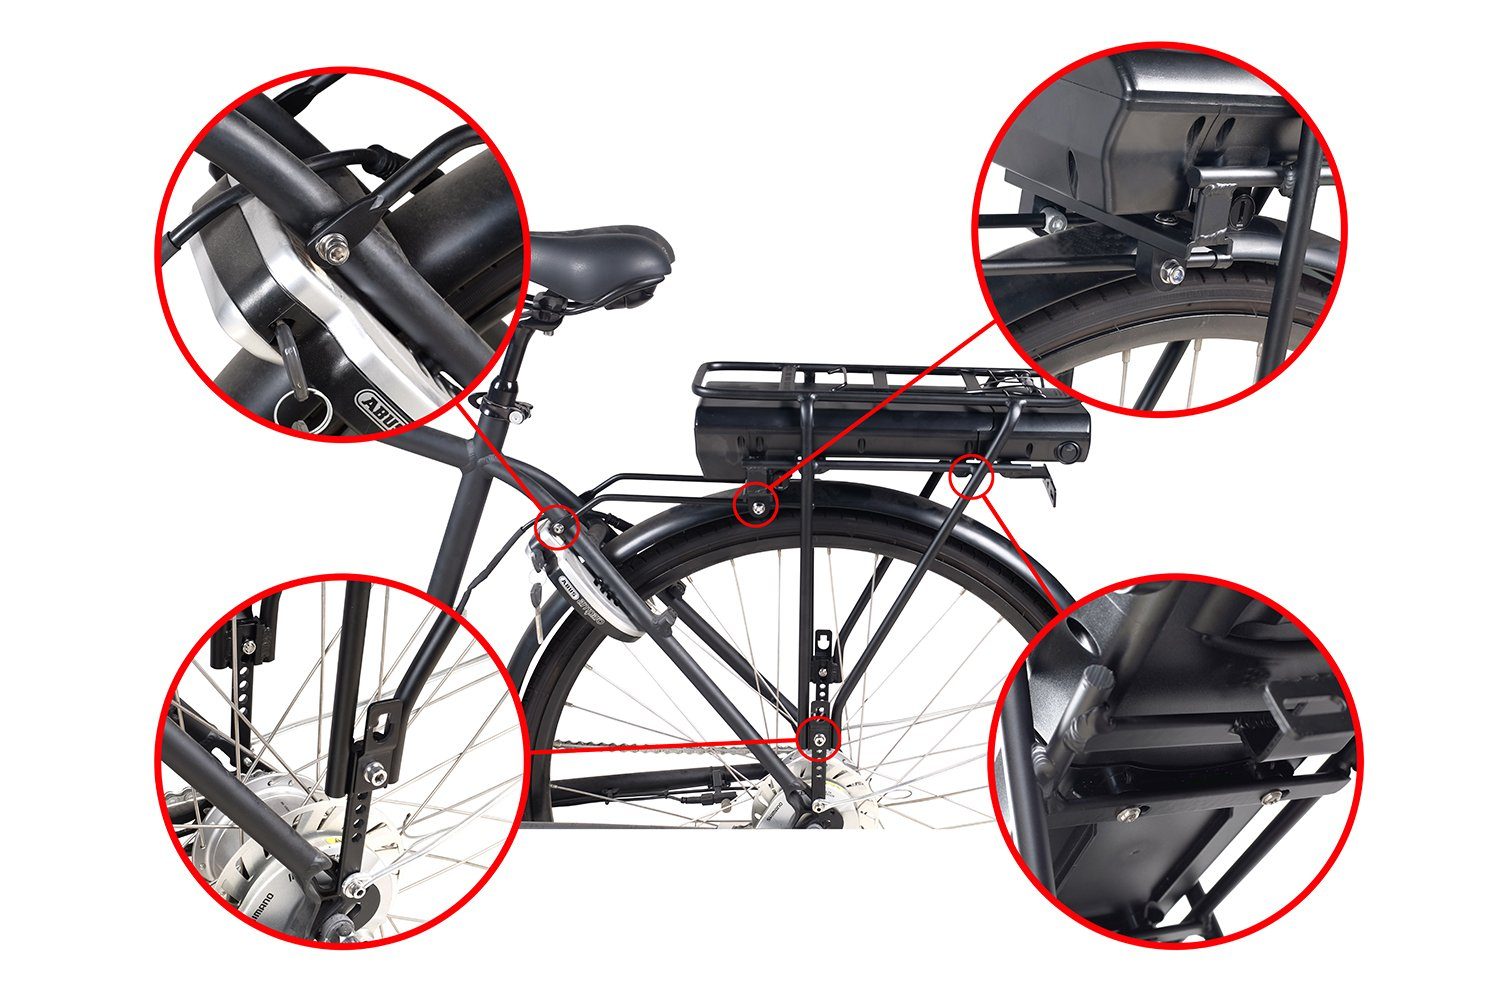 Fahrradgepäckträgersitz Pedelec mit C7 14000 E-Bike Da.28" mAh (11), (36 9AH Wave für LEB36HS92B.916 Batteriehalterung und V) 14Ah 36V- (Li-ion) PowerSmart Lithium-ion Ladegerät und Flyke Akku